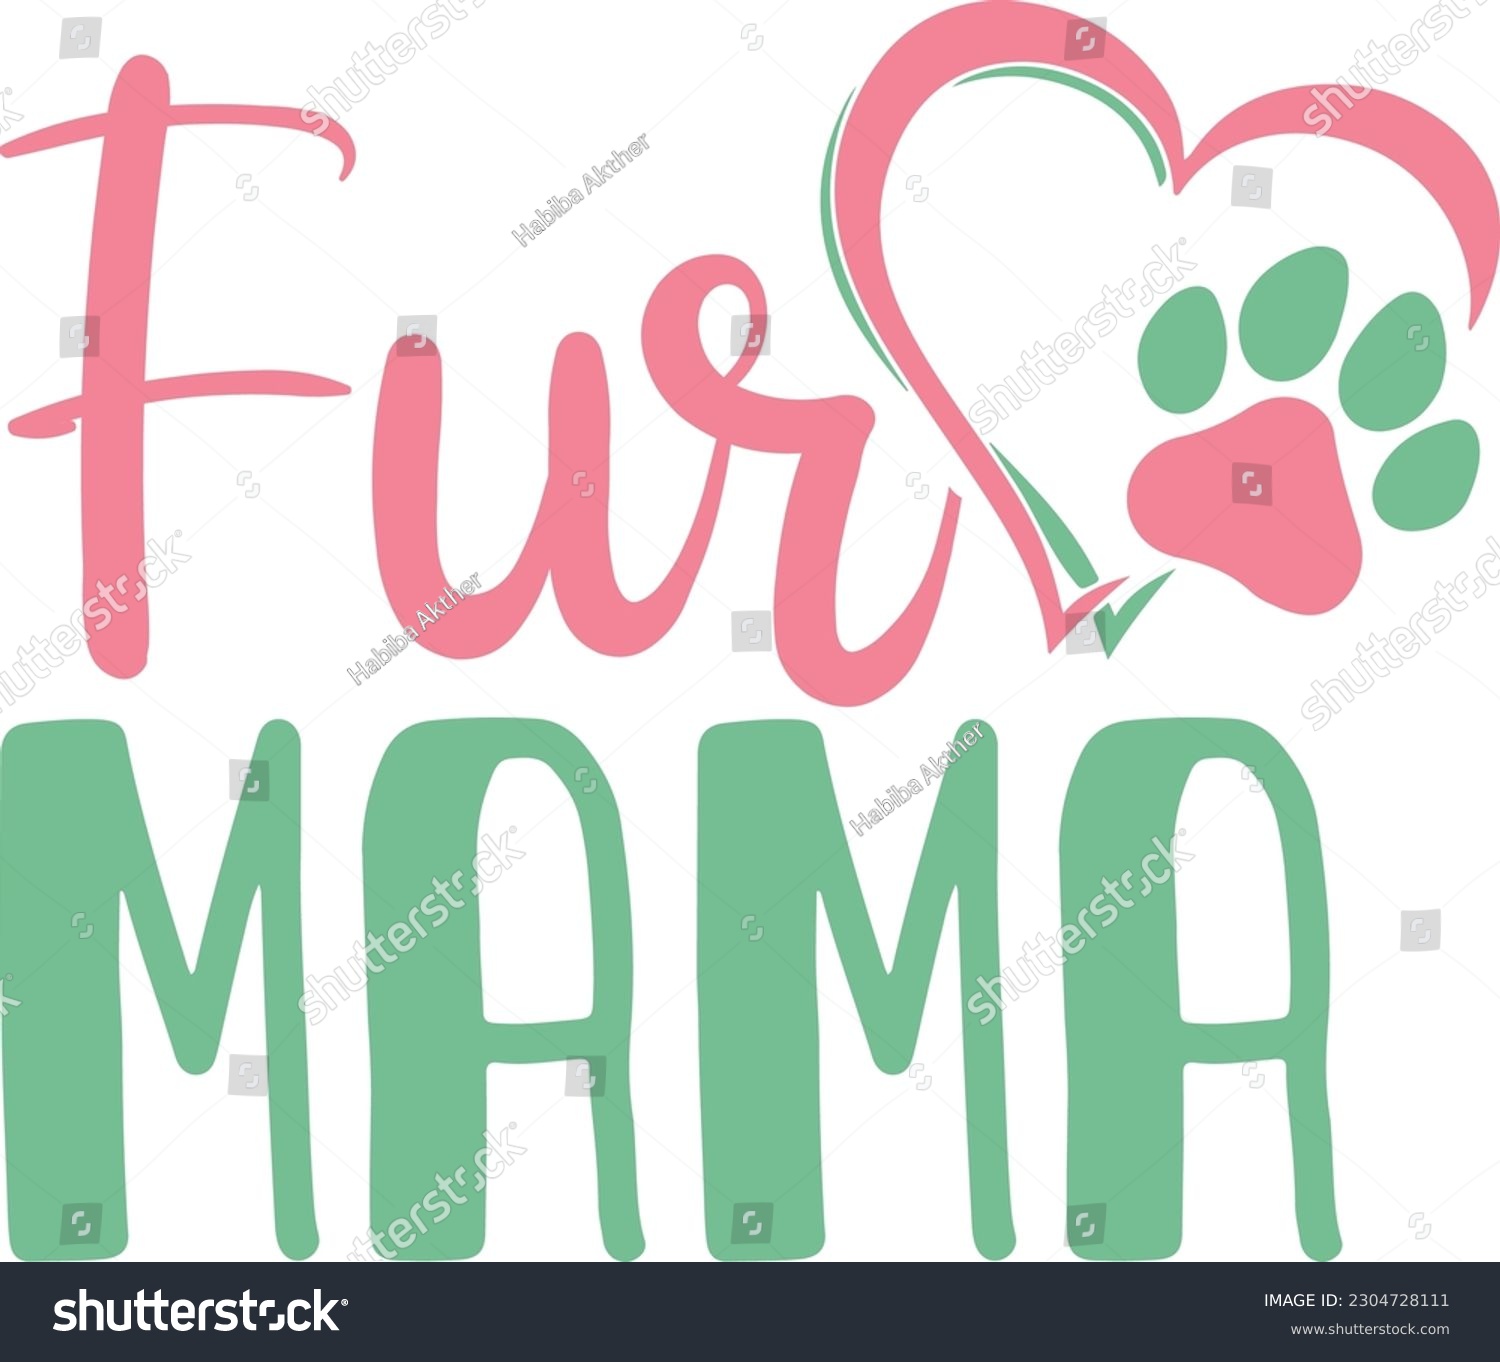 SVG of Fur mama,Dog mom,Puppy Love,Dog Mom Svg,Dog SVG,Silhouette,Dog Owner Svg, Funny Svg,Kids Shirt Svg,Wine,Dog Mama,Dog Heart,Dog Paw,Eps,Labrador Svg,Pet Svg,Vector, svg